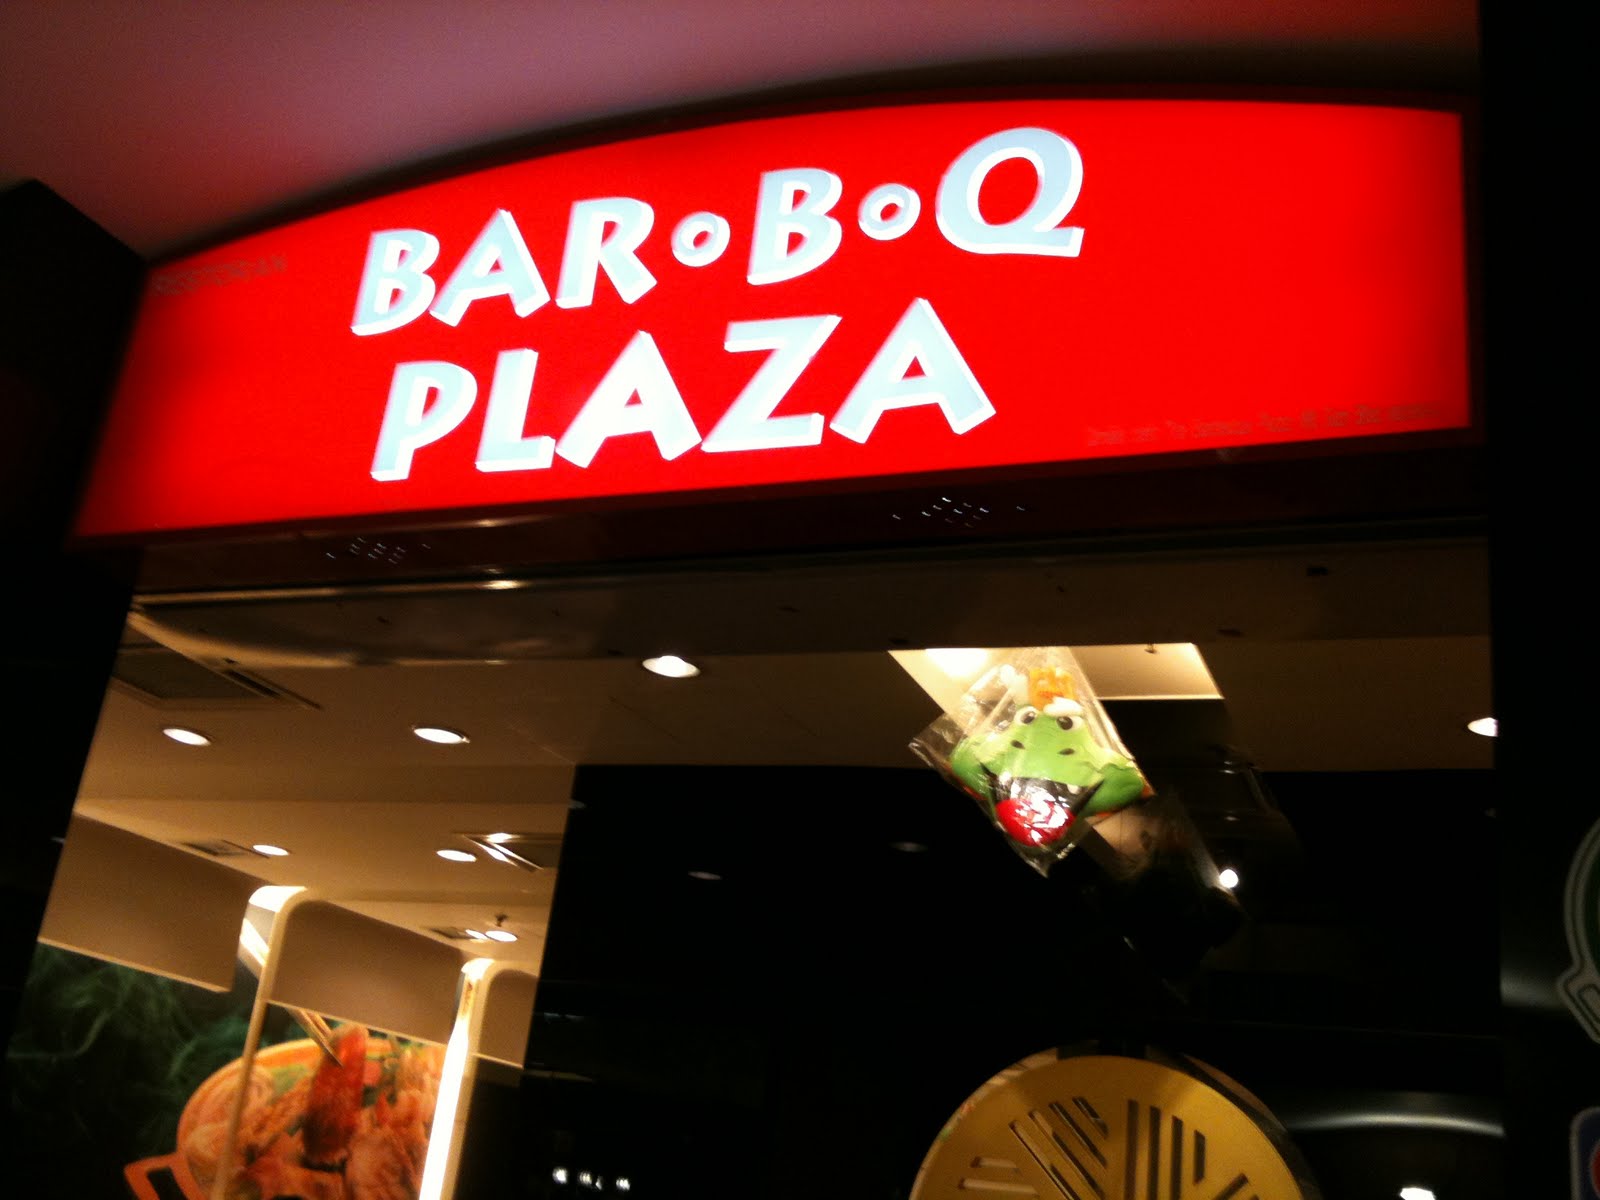 Shuen: Barbecue Plaza